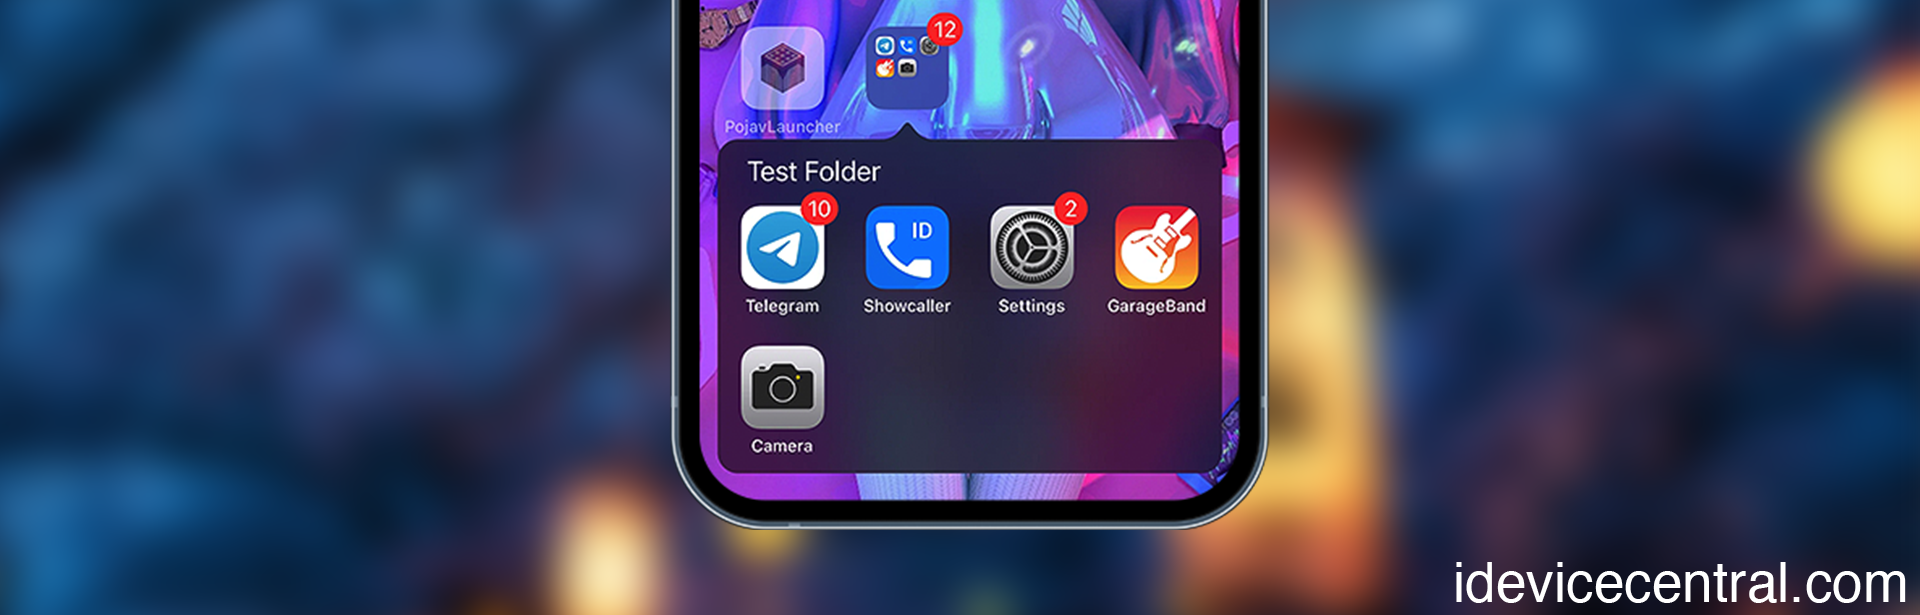 ClassicFolders 3 Tweak released for Rootless Jailbreak on iOS 16 – 17